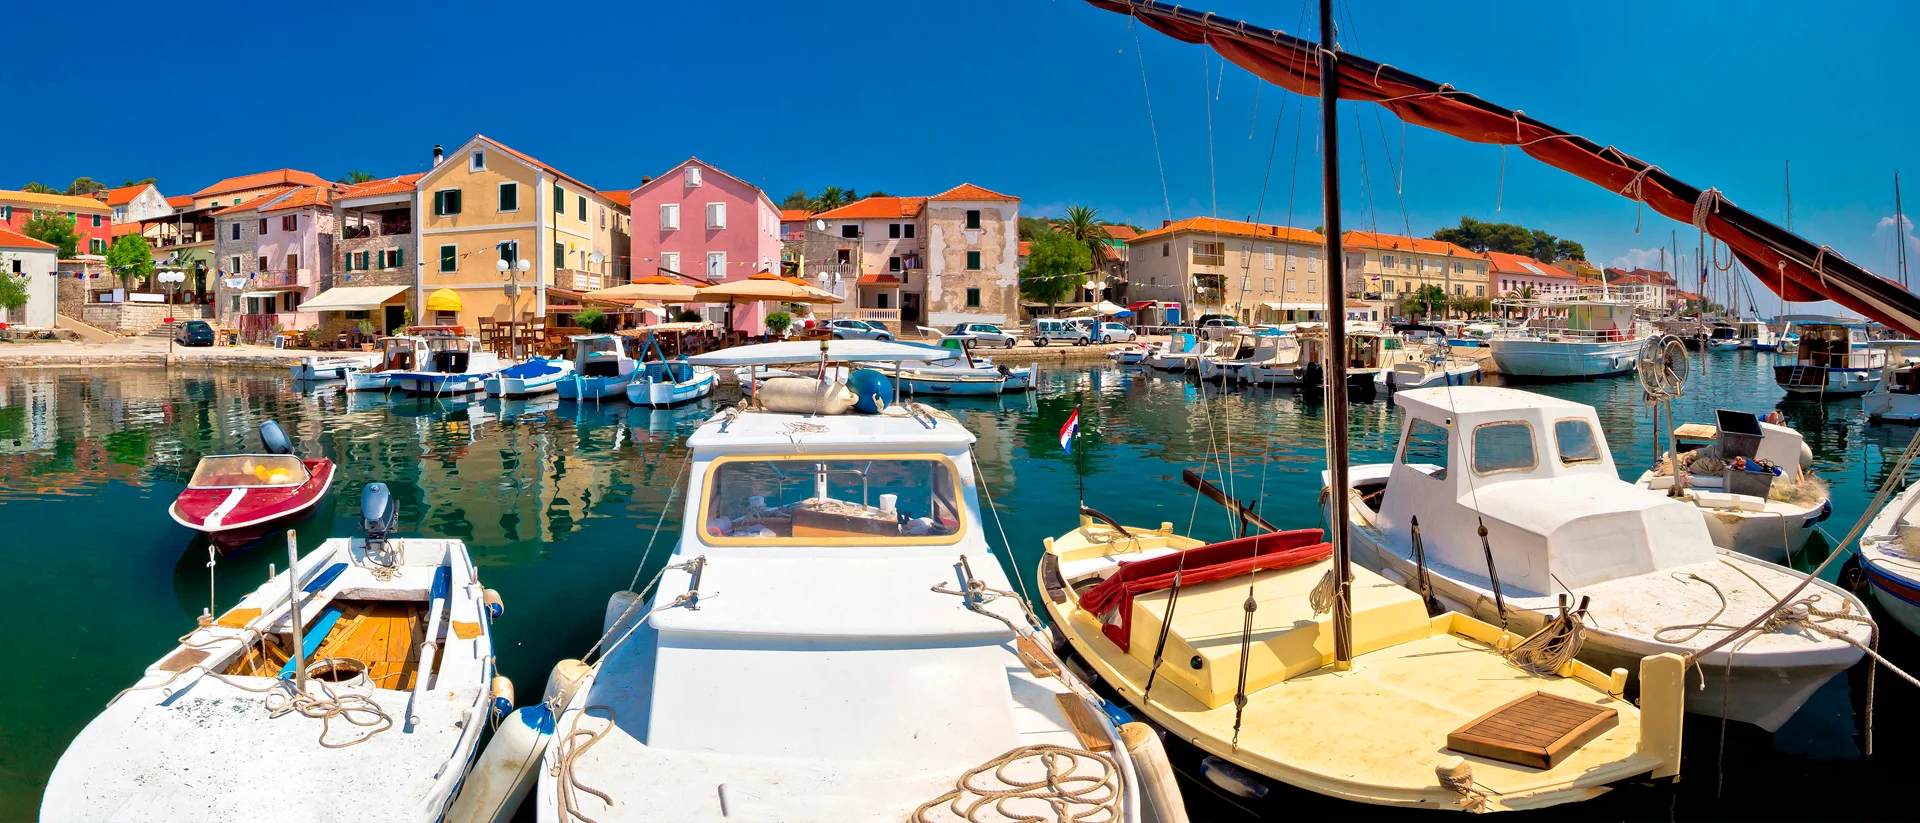 Strandhaus am Hafen von Dubrovnik, Segelcharter